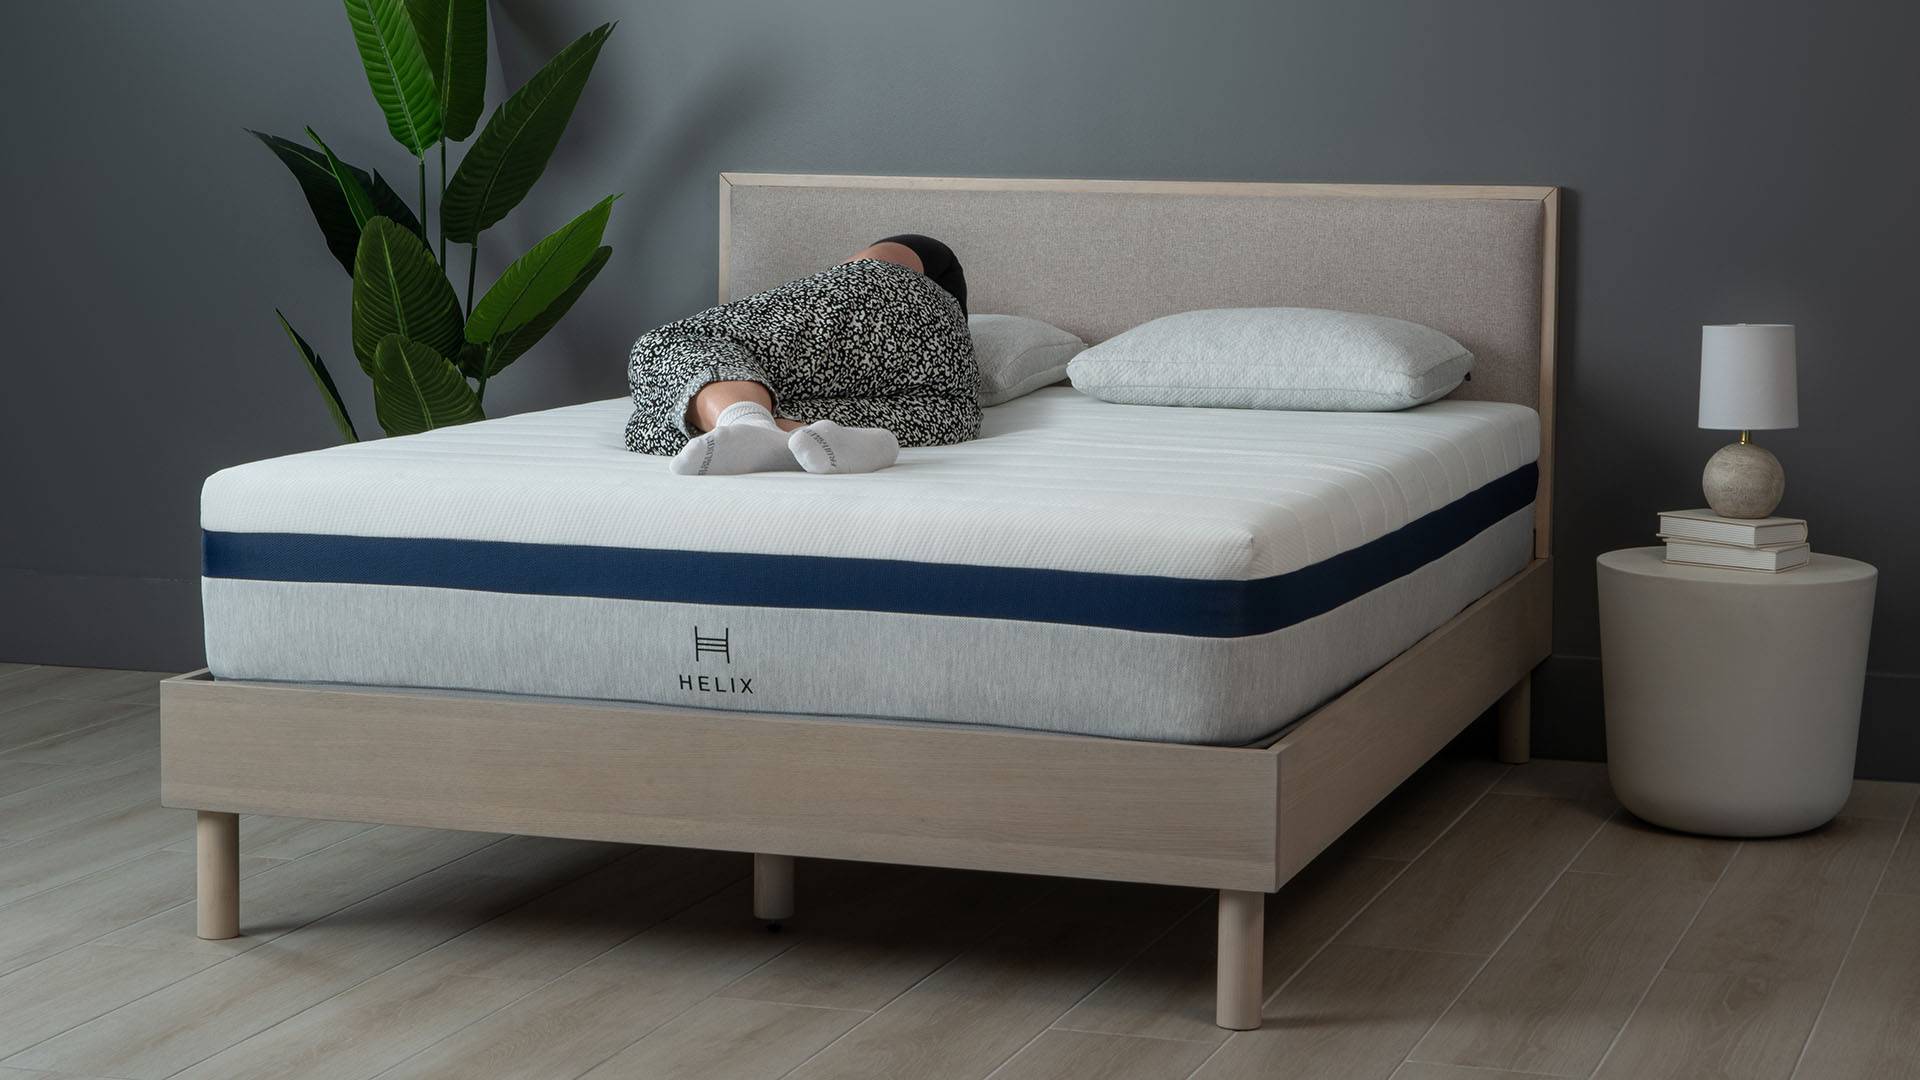 Helix Midnight mattress on a wooden bedframe, against a dark wall